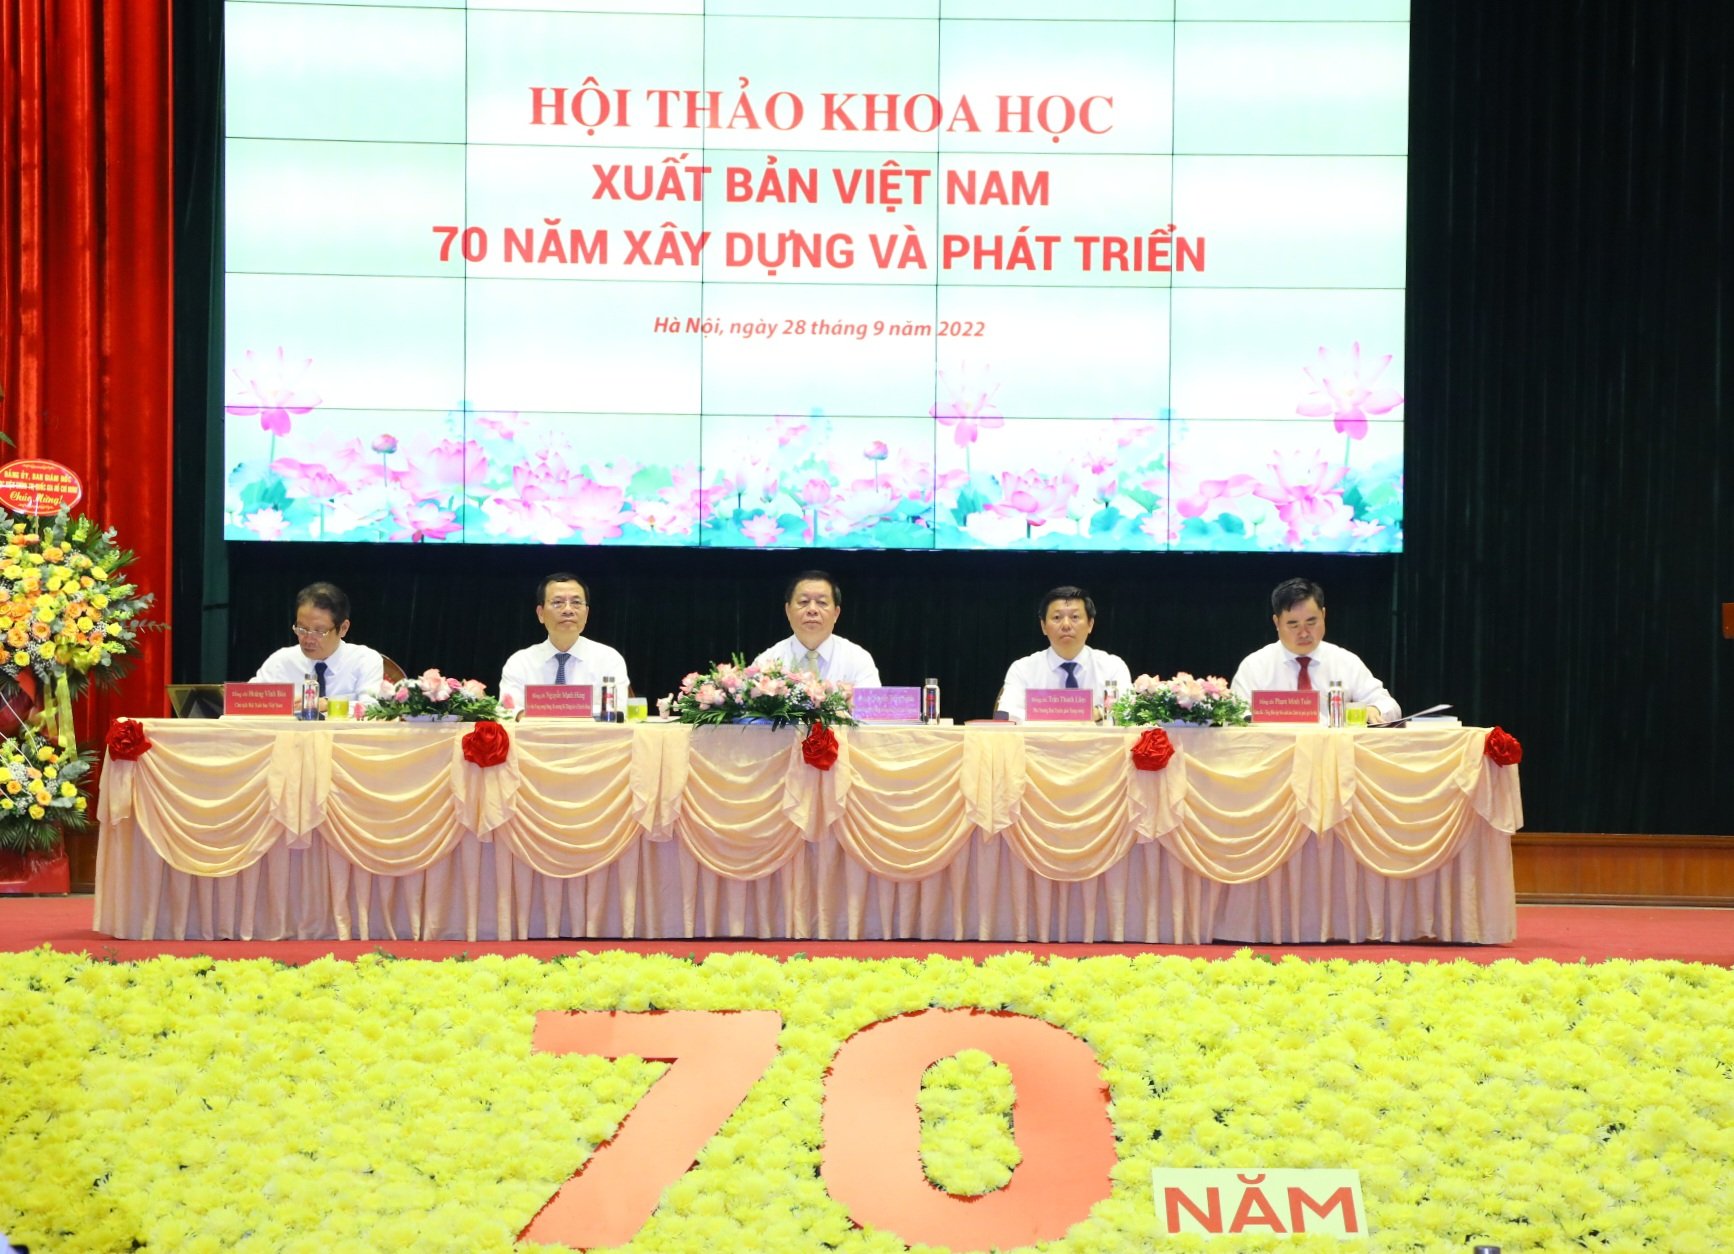 Xuất bản Việt Nam với phát triển văn hóa đọc, xây dựng nền văn hóa Việt Nam tiên tiến, đậm đà bản sắc dân tộc - 1